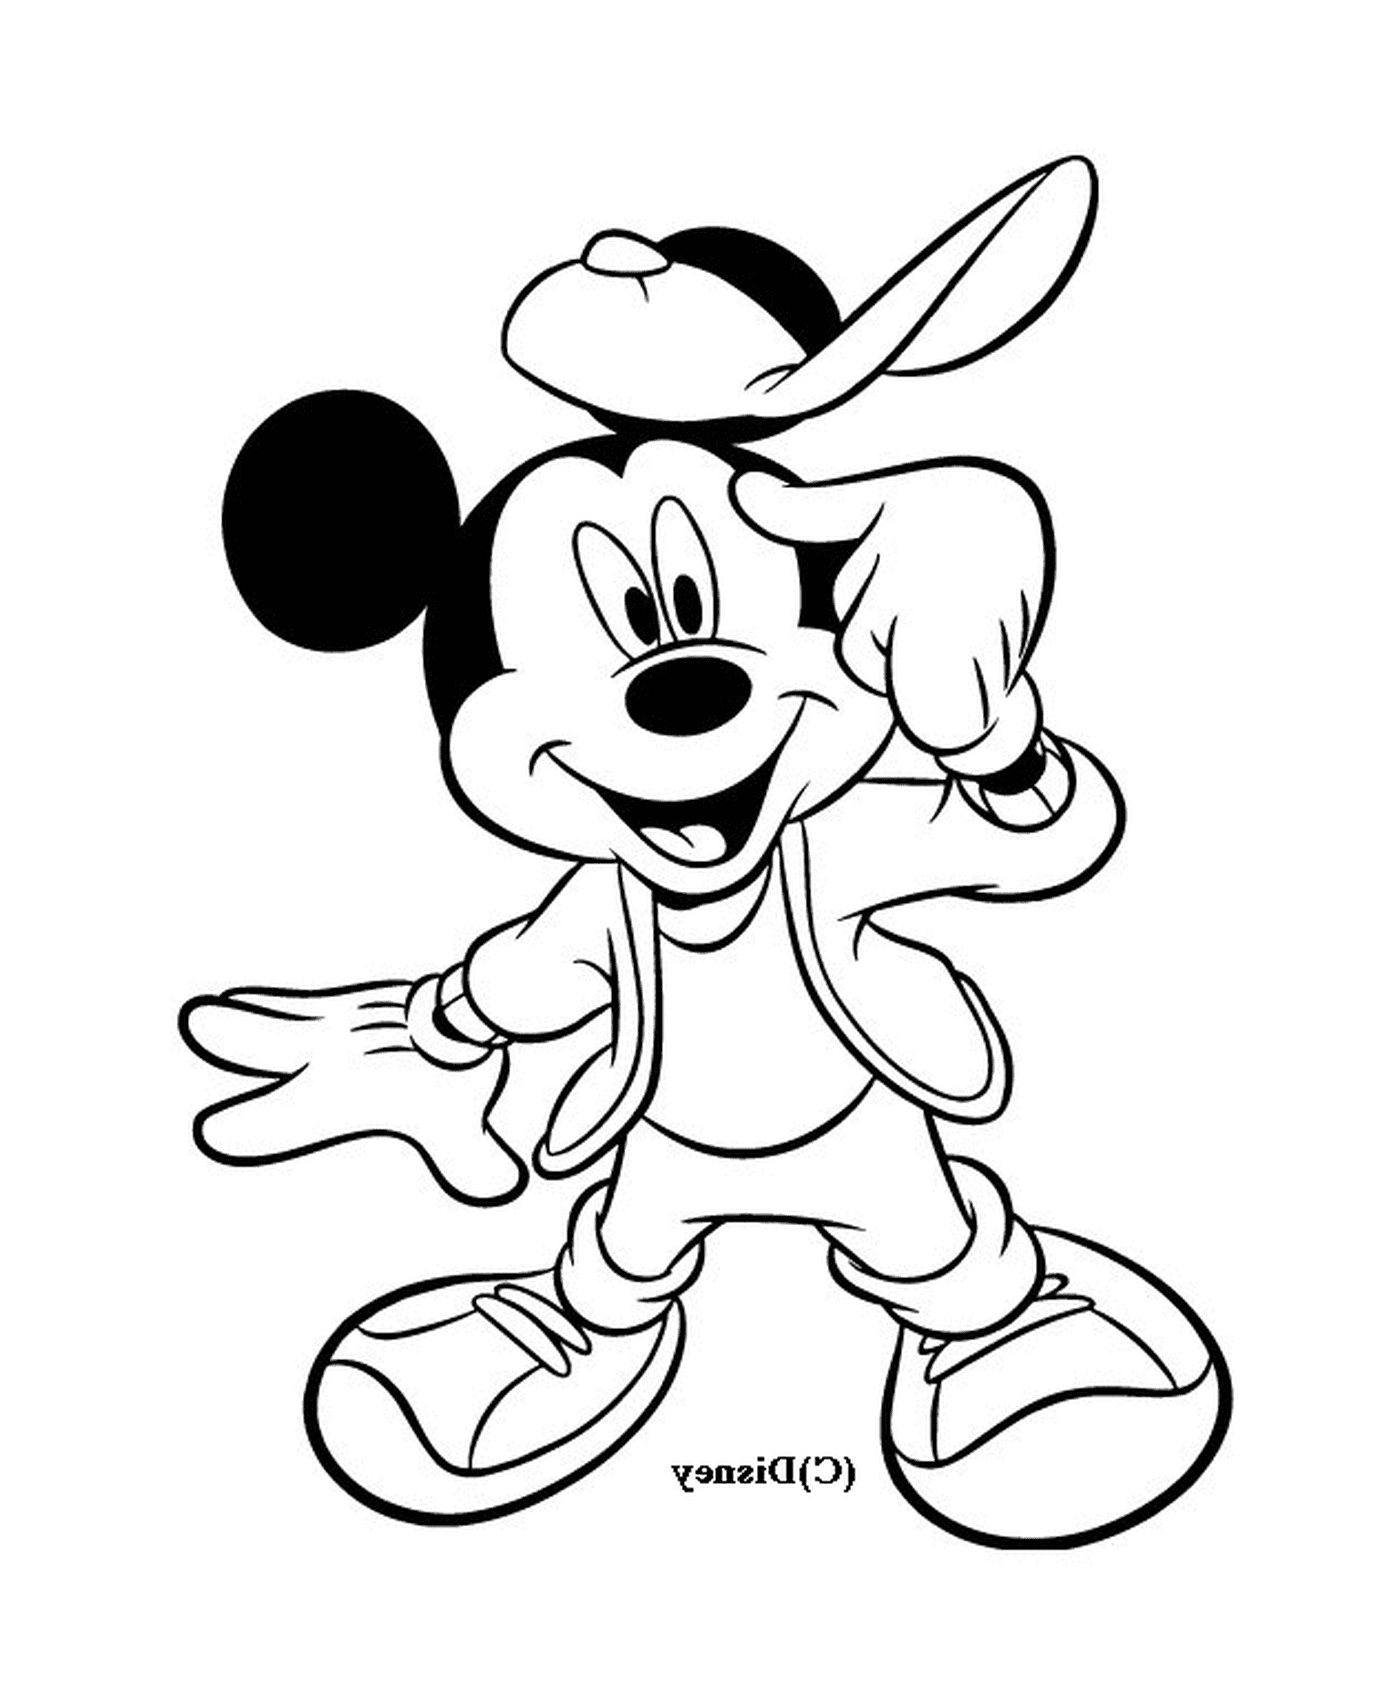  Mickey ist cool: Mit Baseballmütze und Jacke 